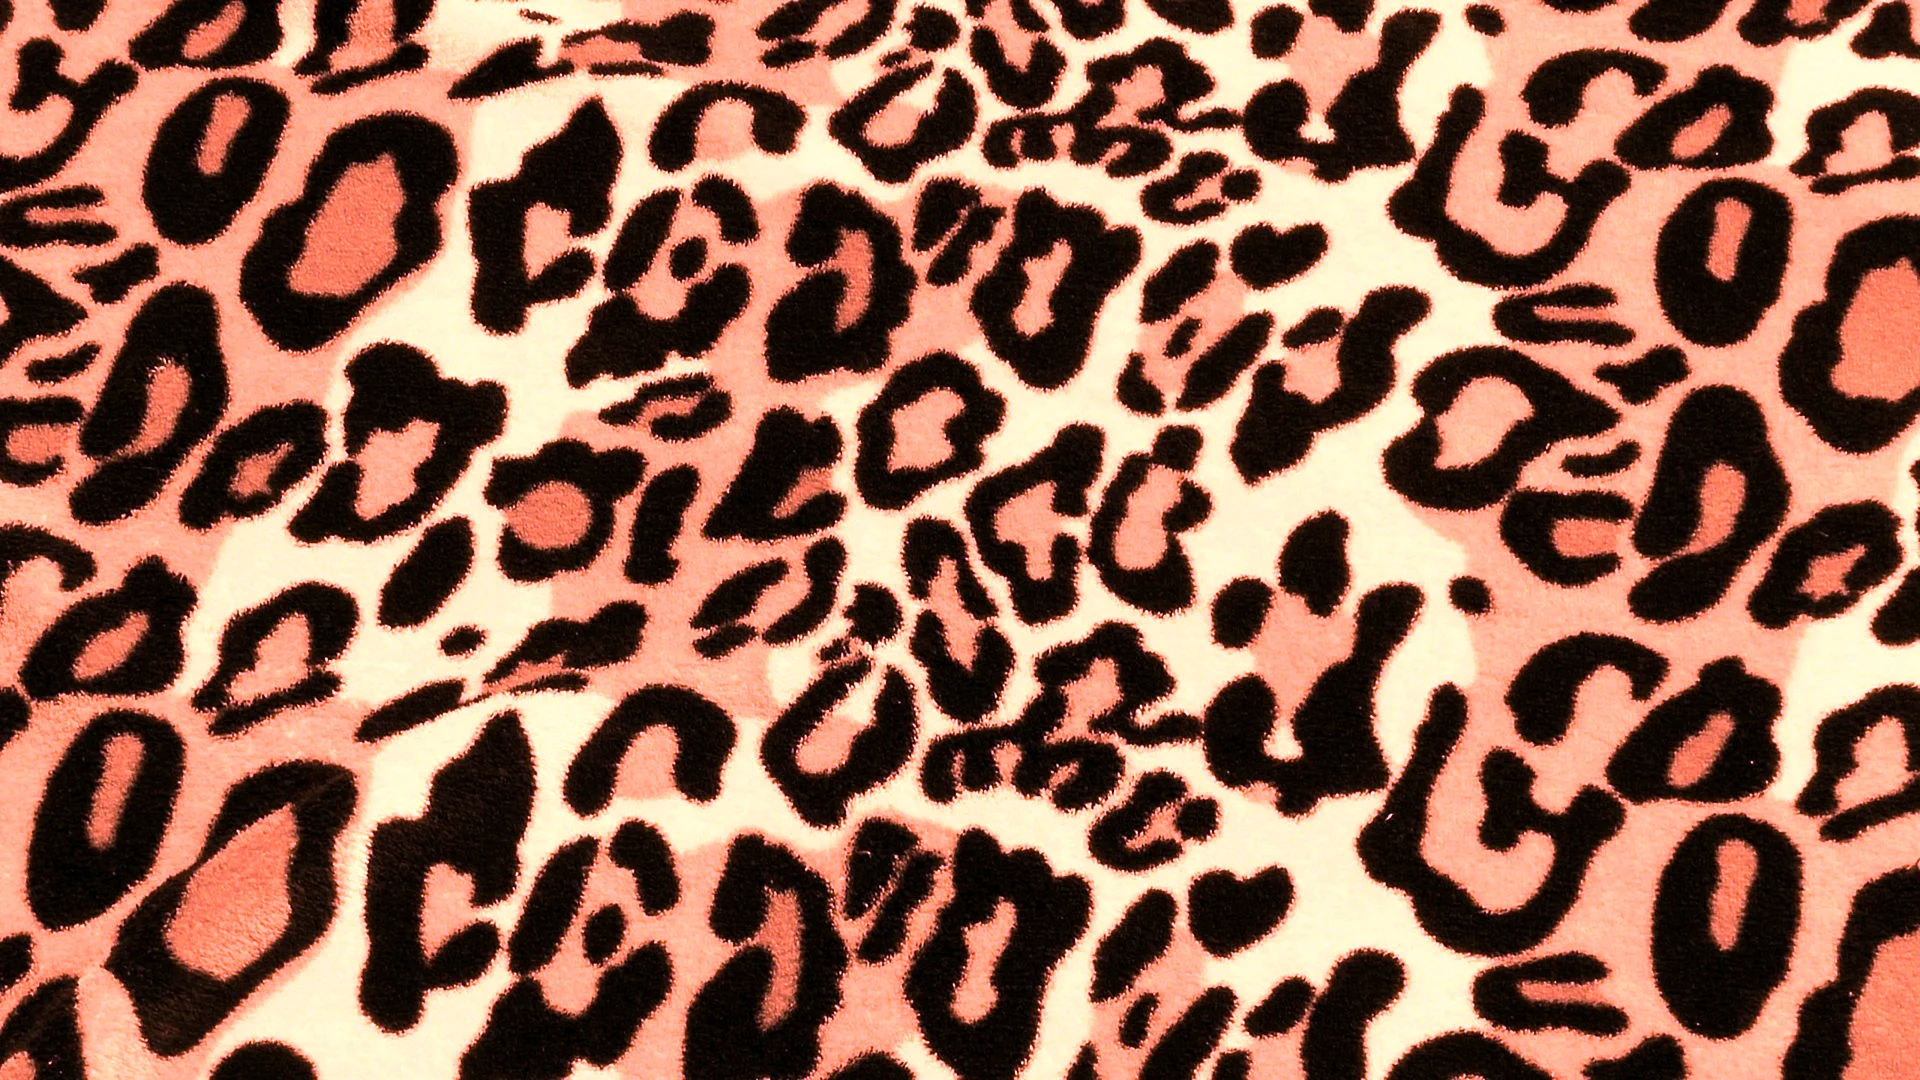 Leopard Skin Wallpaper